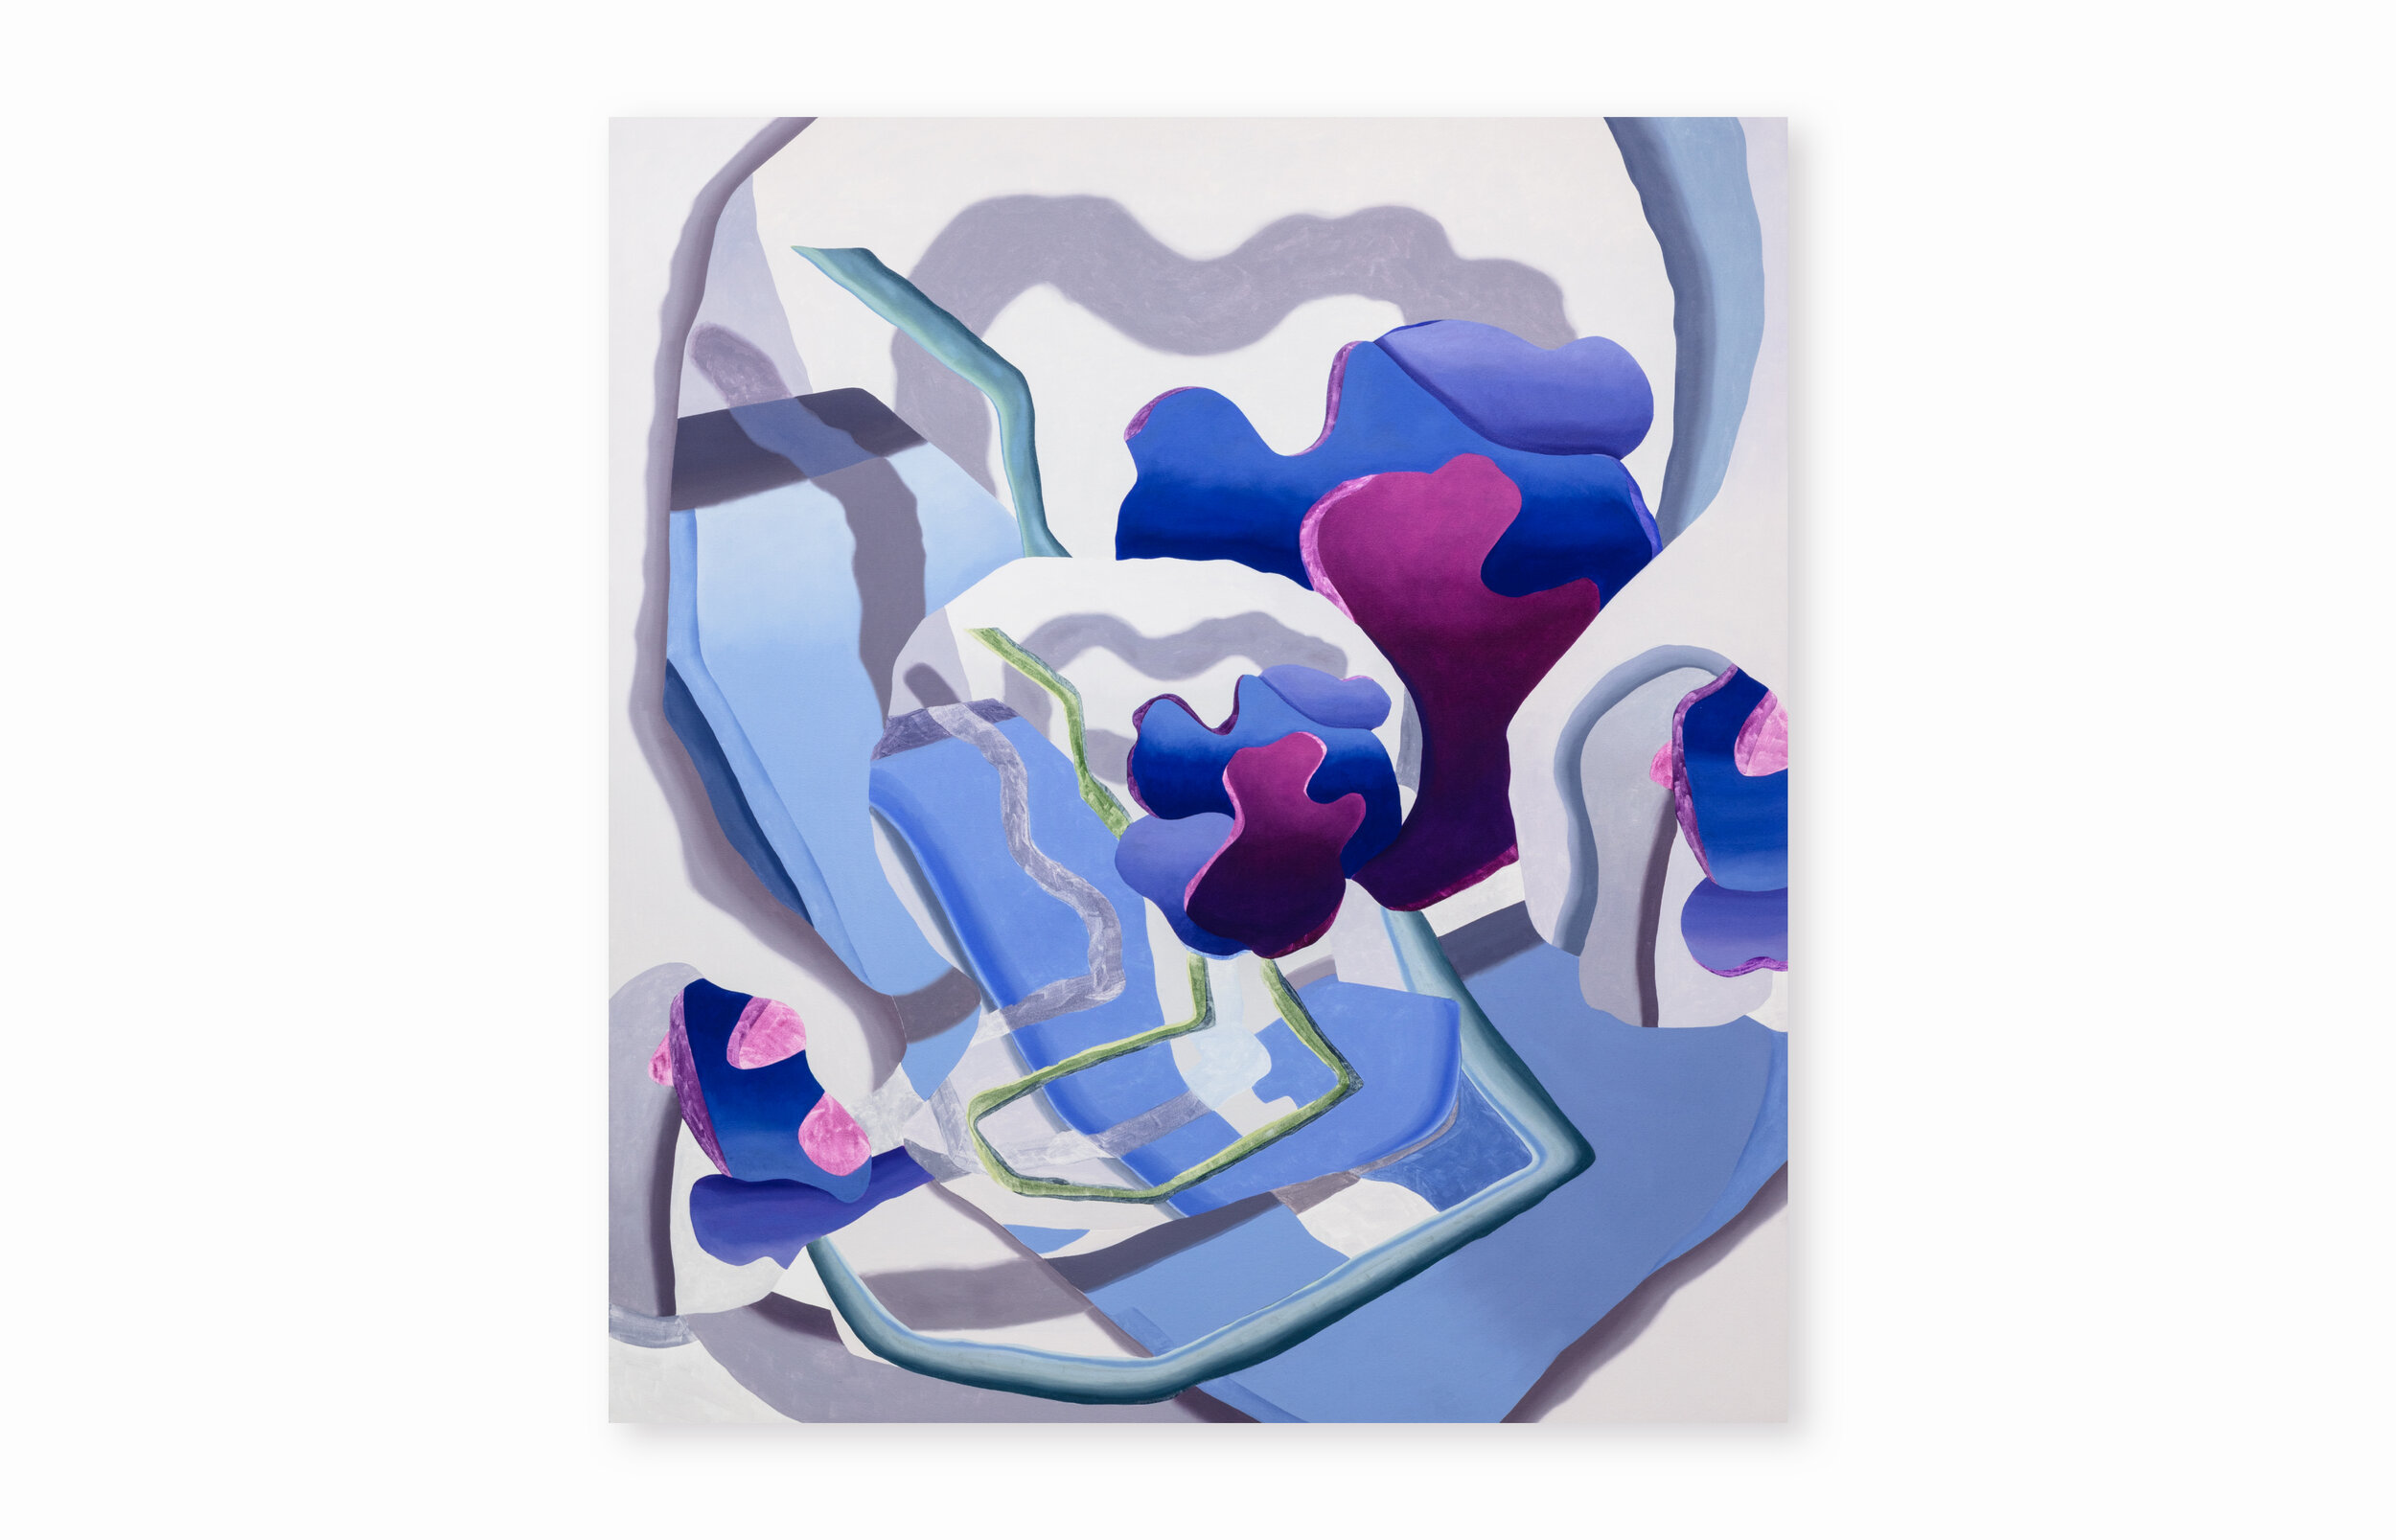  Hydrangea Yeah. Oil on canvas, 54 x 60”. 2019. 